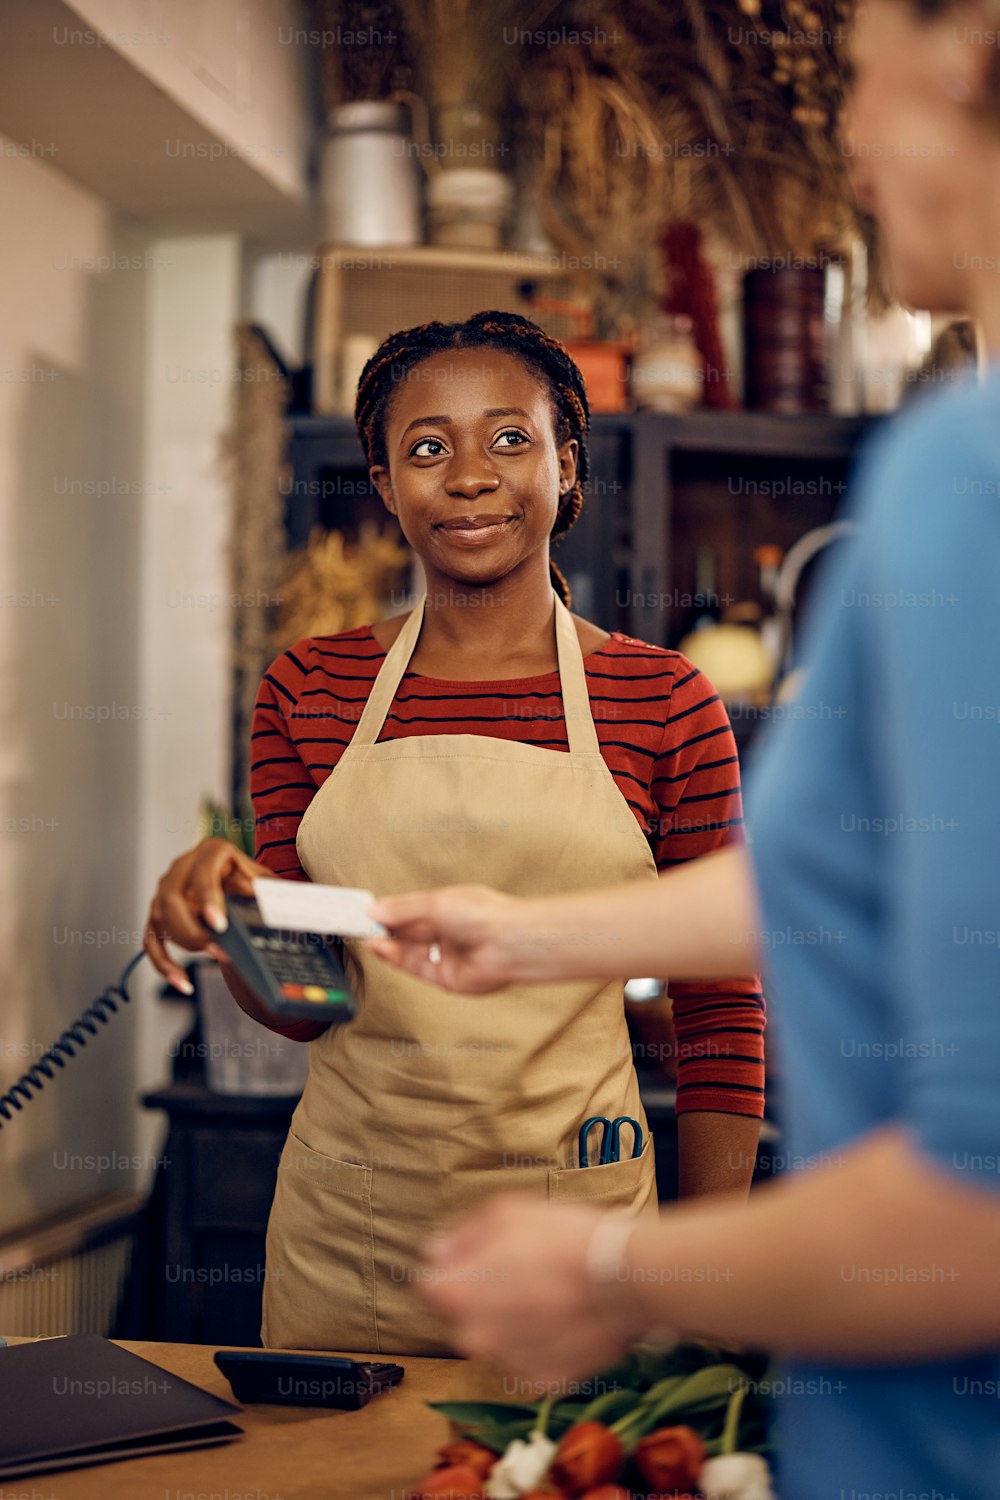 Femme afro-américaine heureuse travaillant comme fleuriste et recevant le paiement par carte de crédit de son client dans un magasin de fleurs.